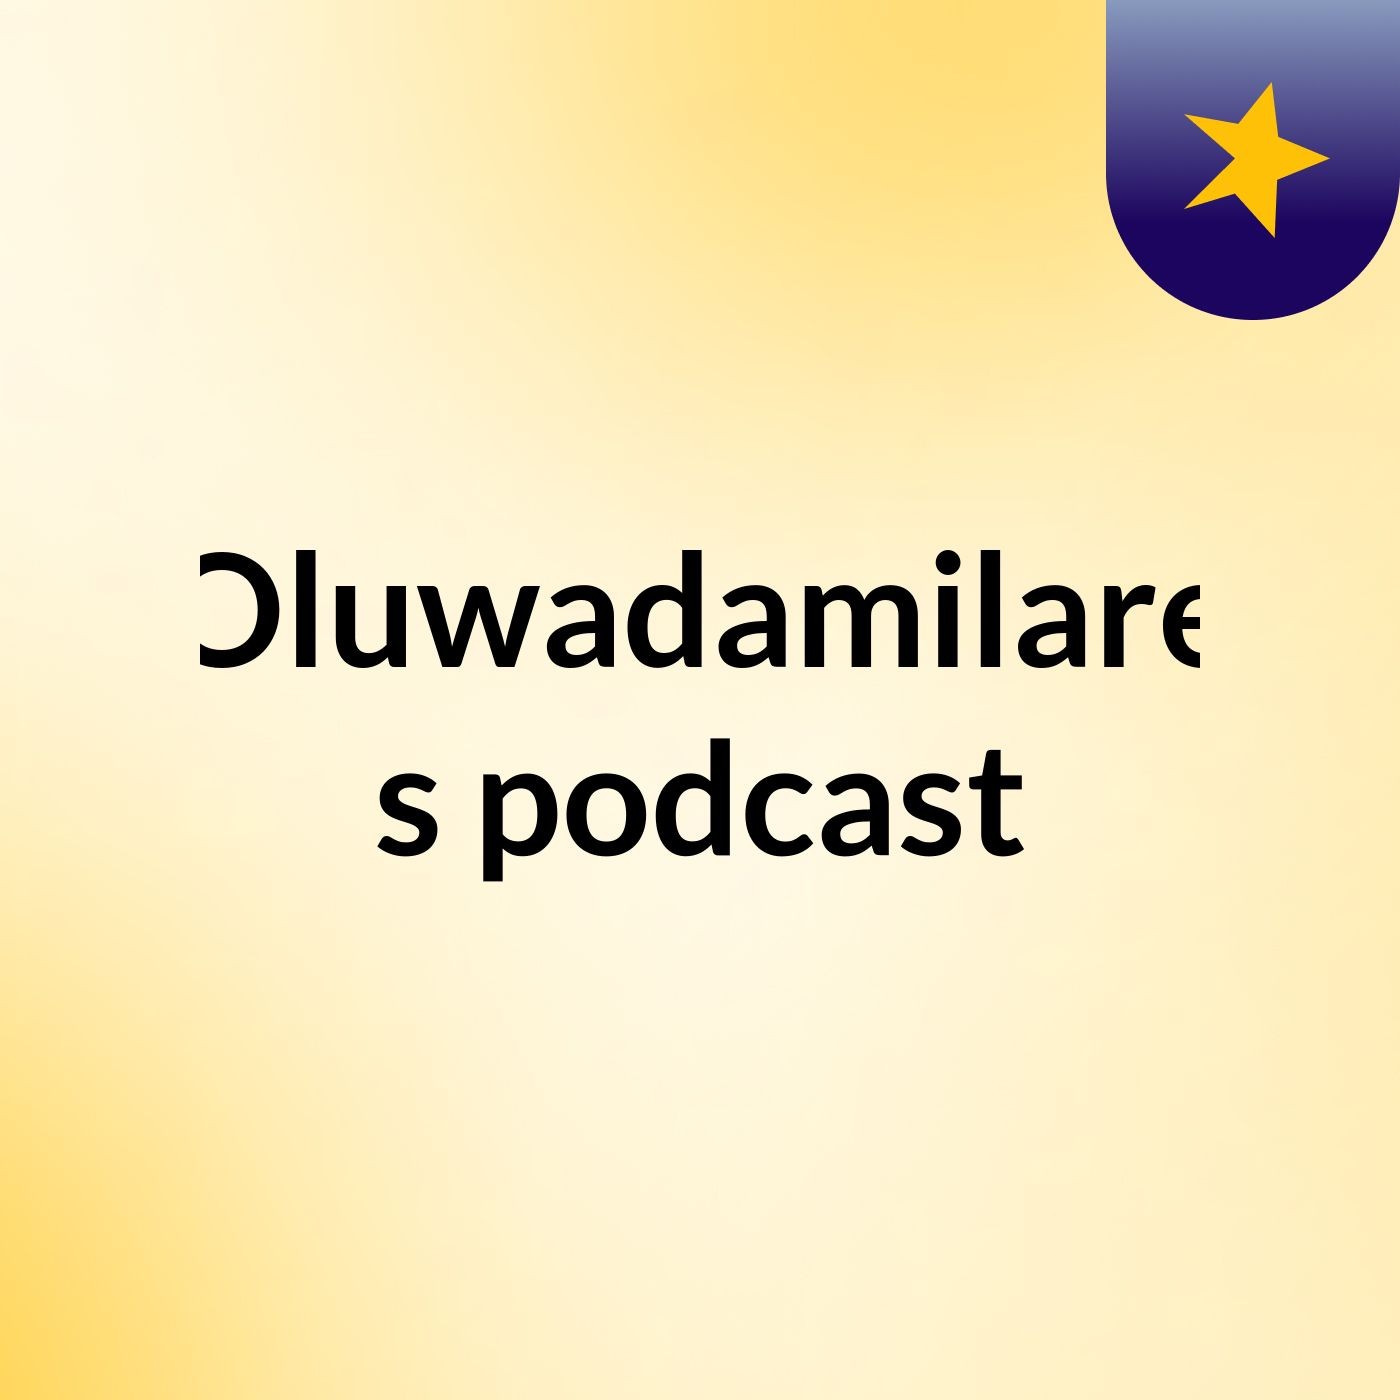 Episode 5 - Oluwadamilare's podcast